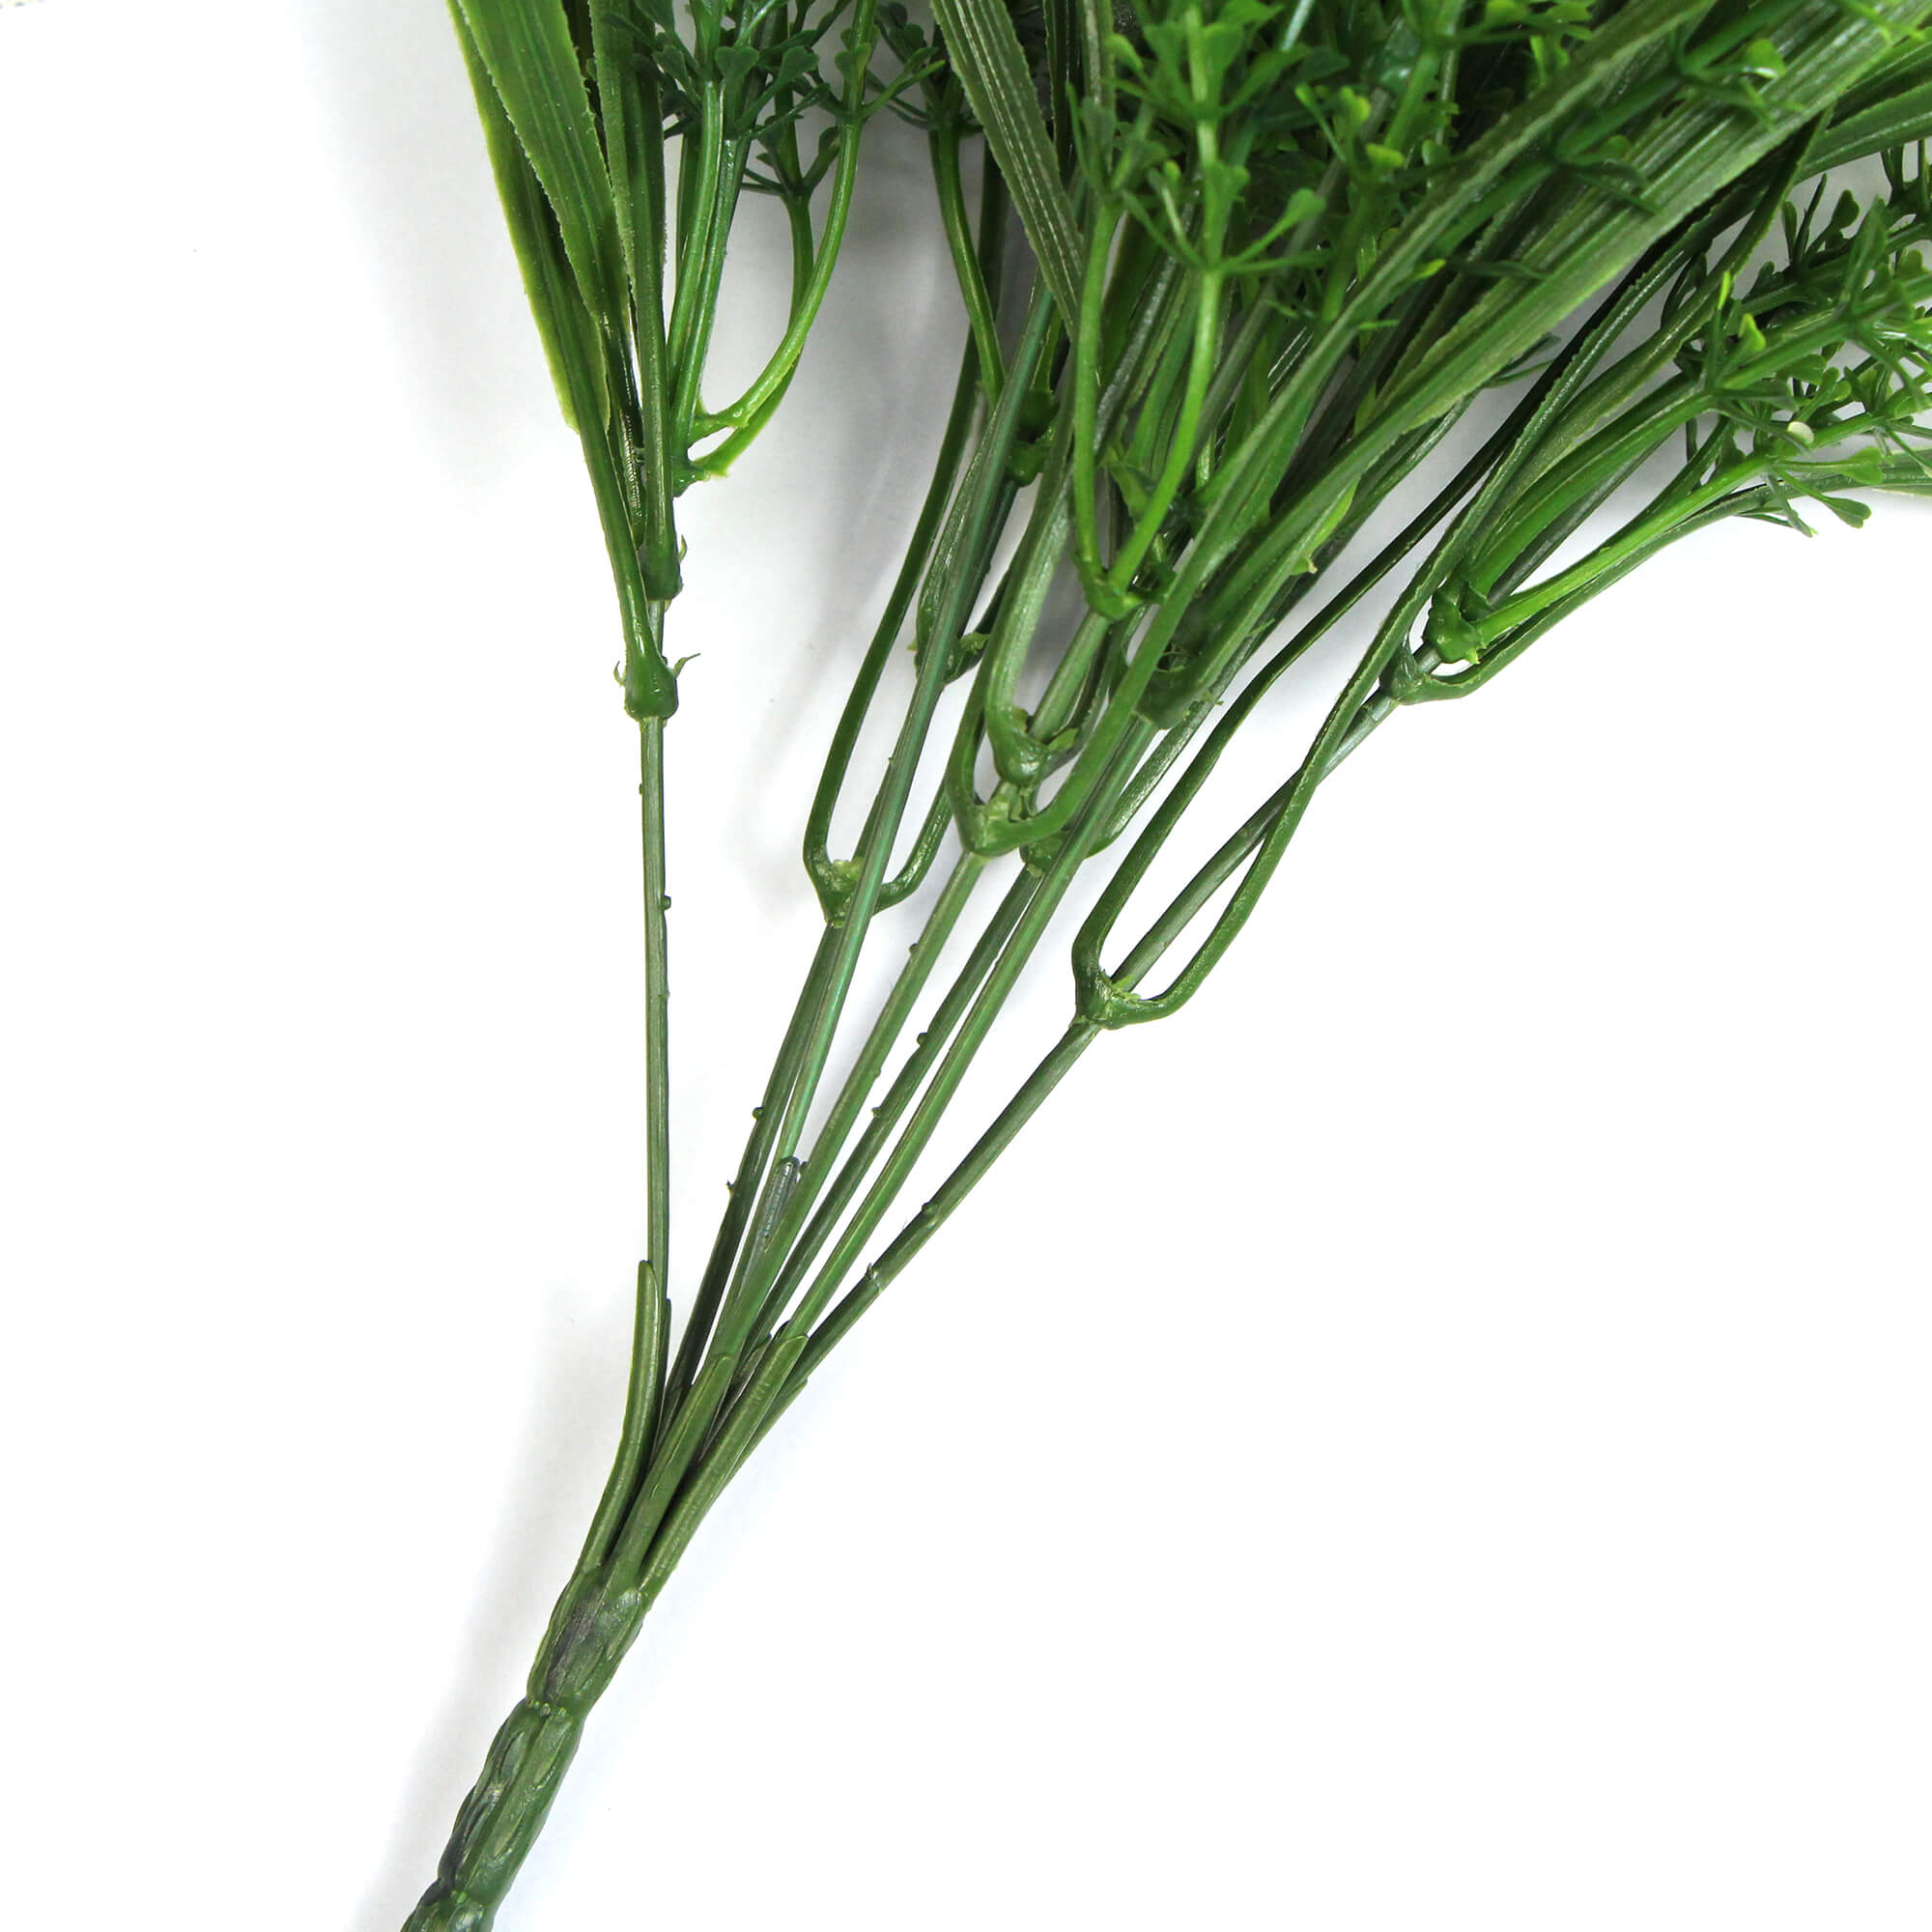 Artificial Daisy Grass Stem UV 30cm - Designer Vertical Gardens fake plant stem Stems / Ferns